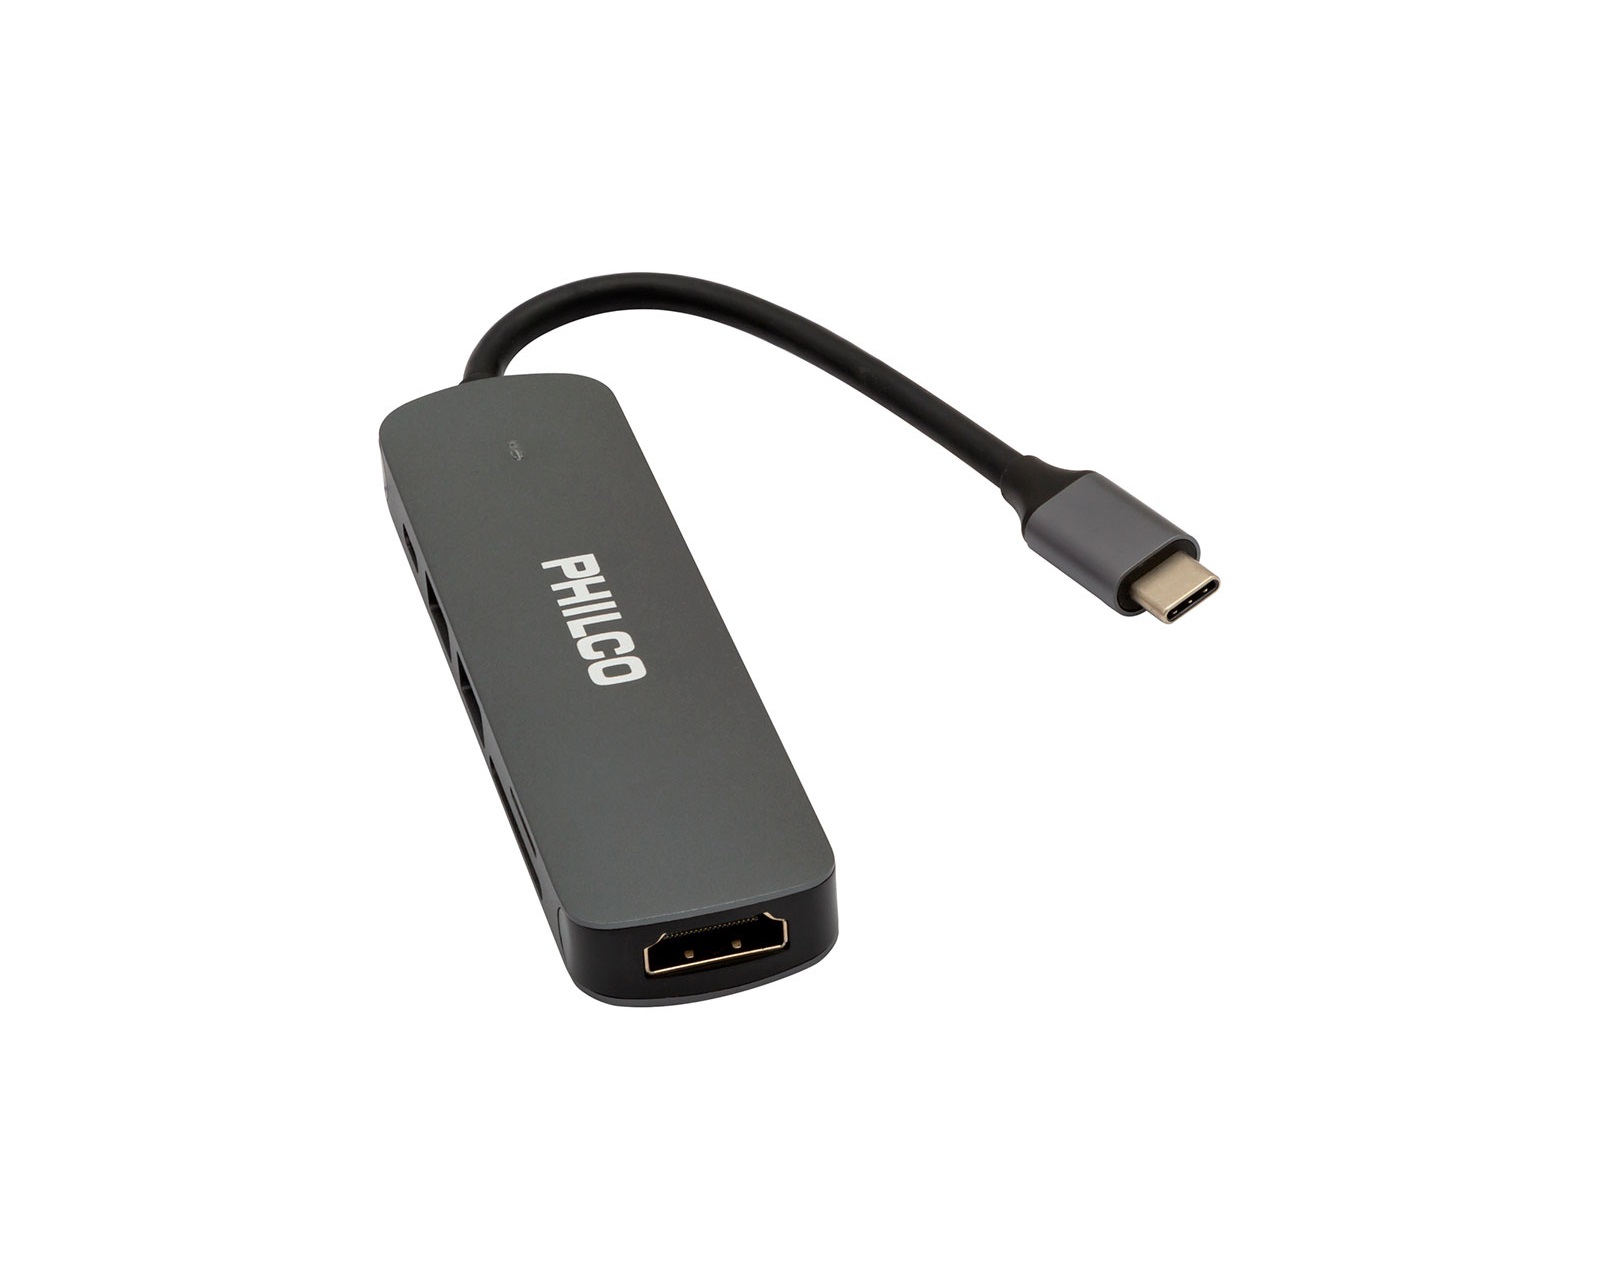 ADAPTADOR USB-C A USB 3.0 PHILCO – Librería Servicom